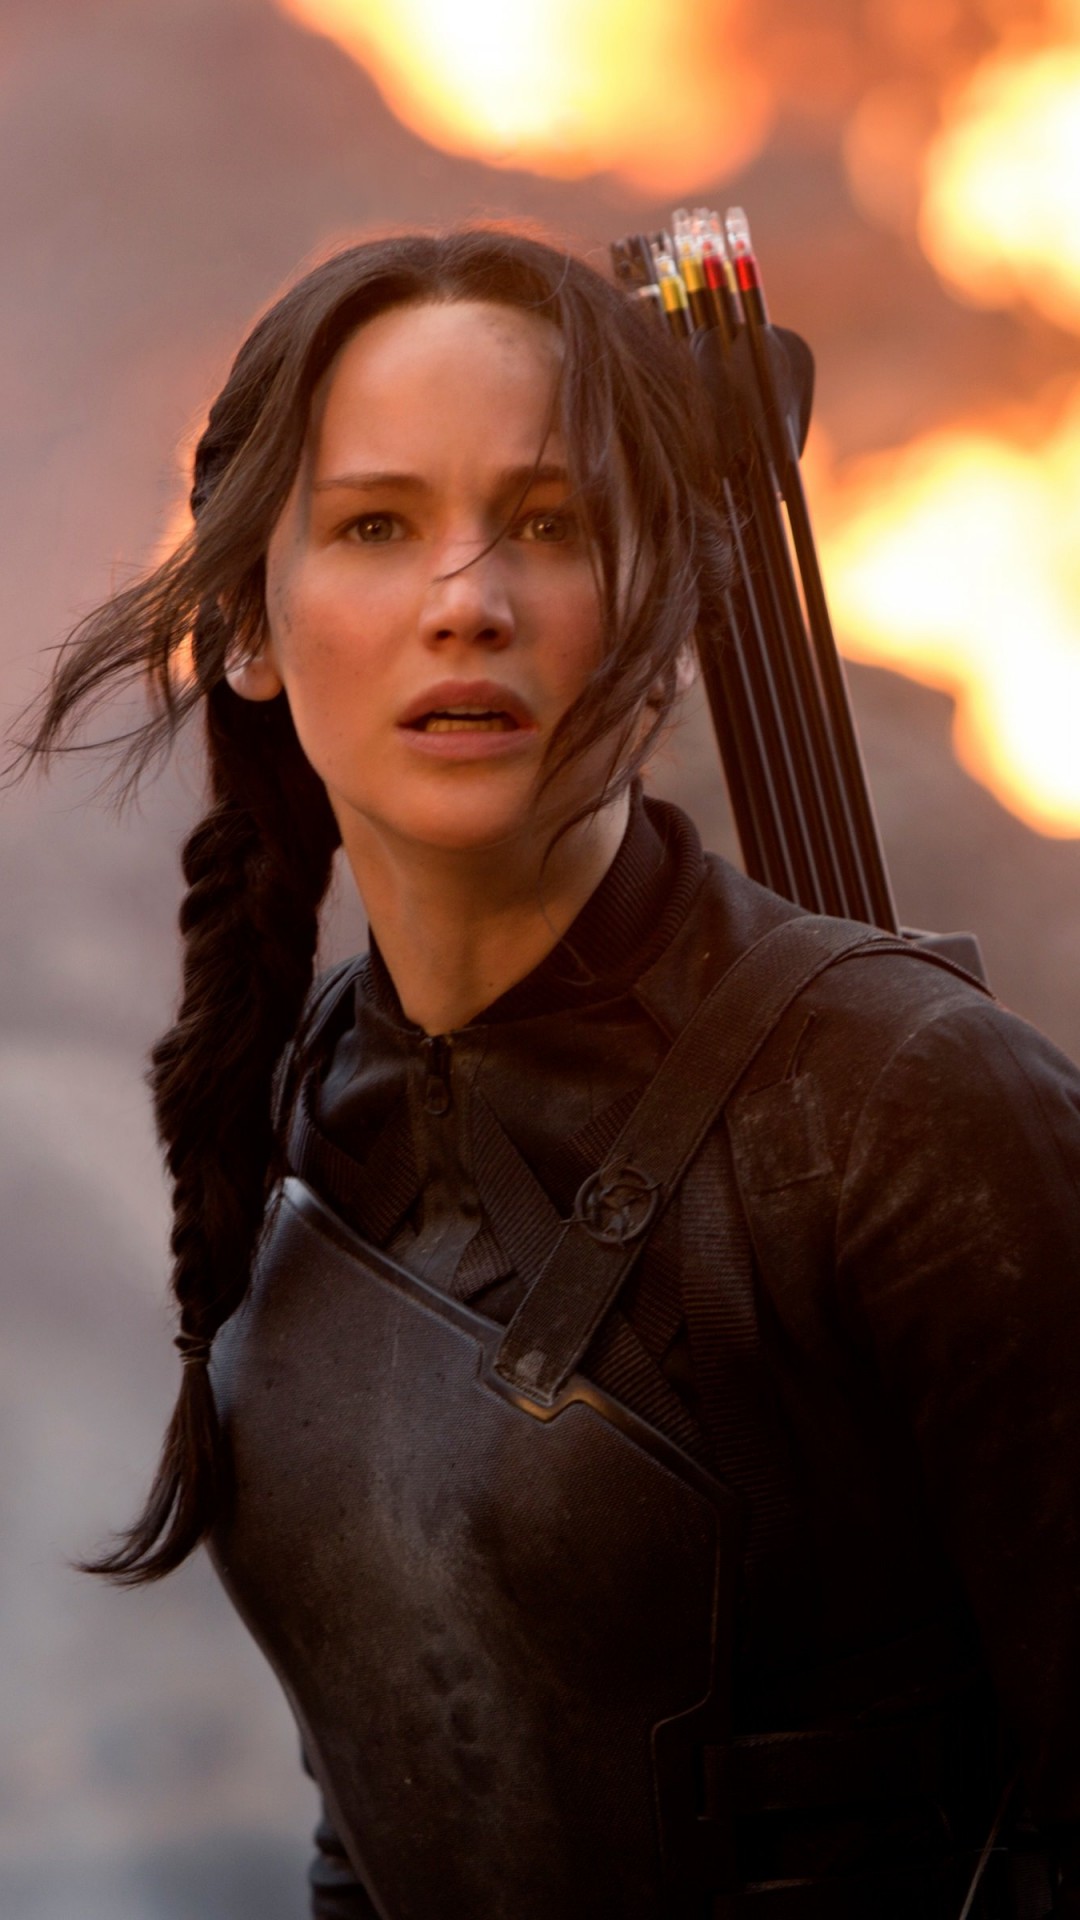 Jennifer Lawrence in The Hunger Games Wallpaper for Motorola Moto X